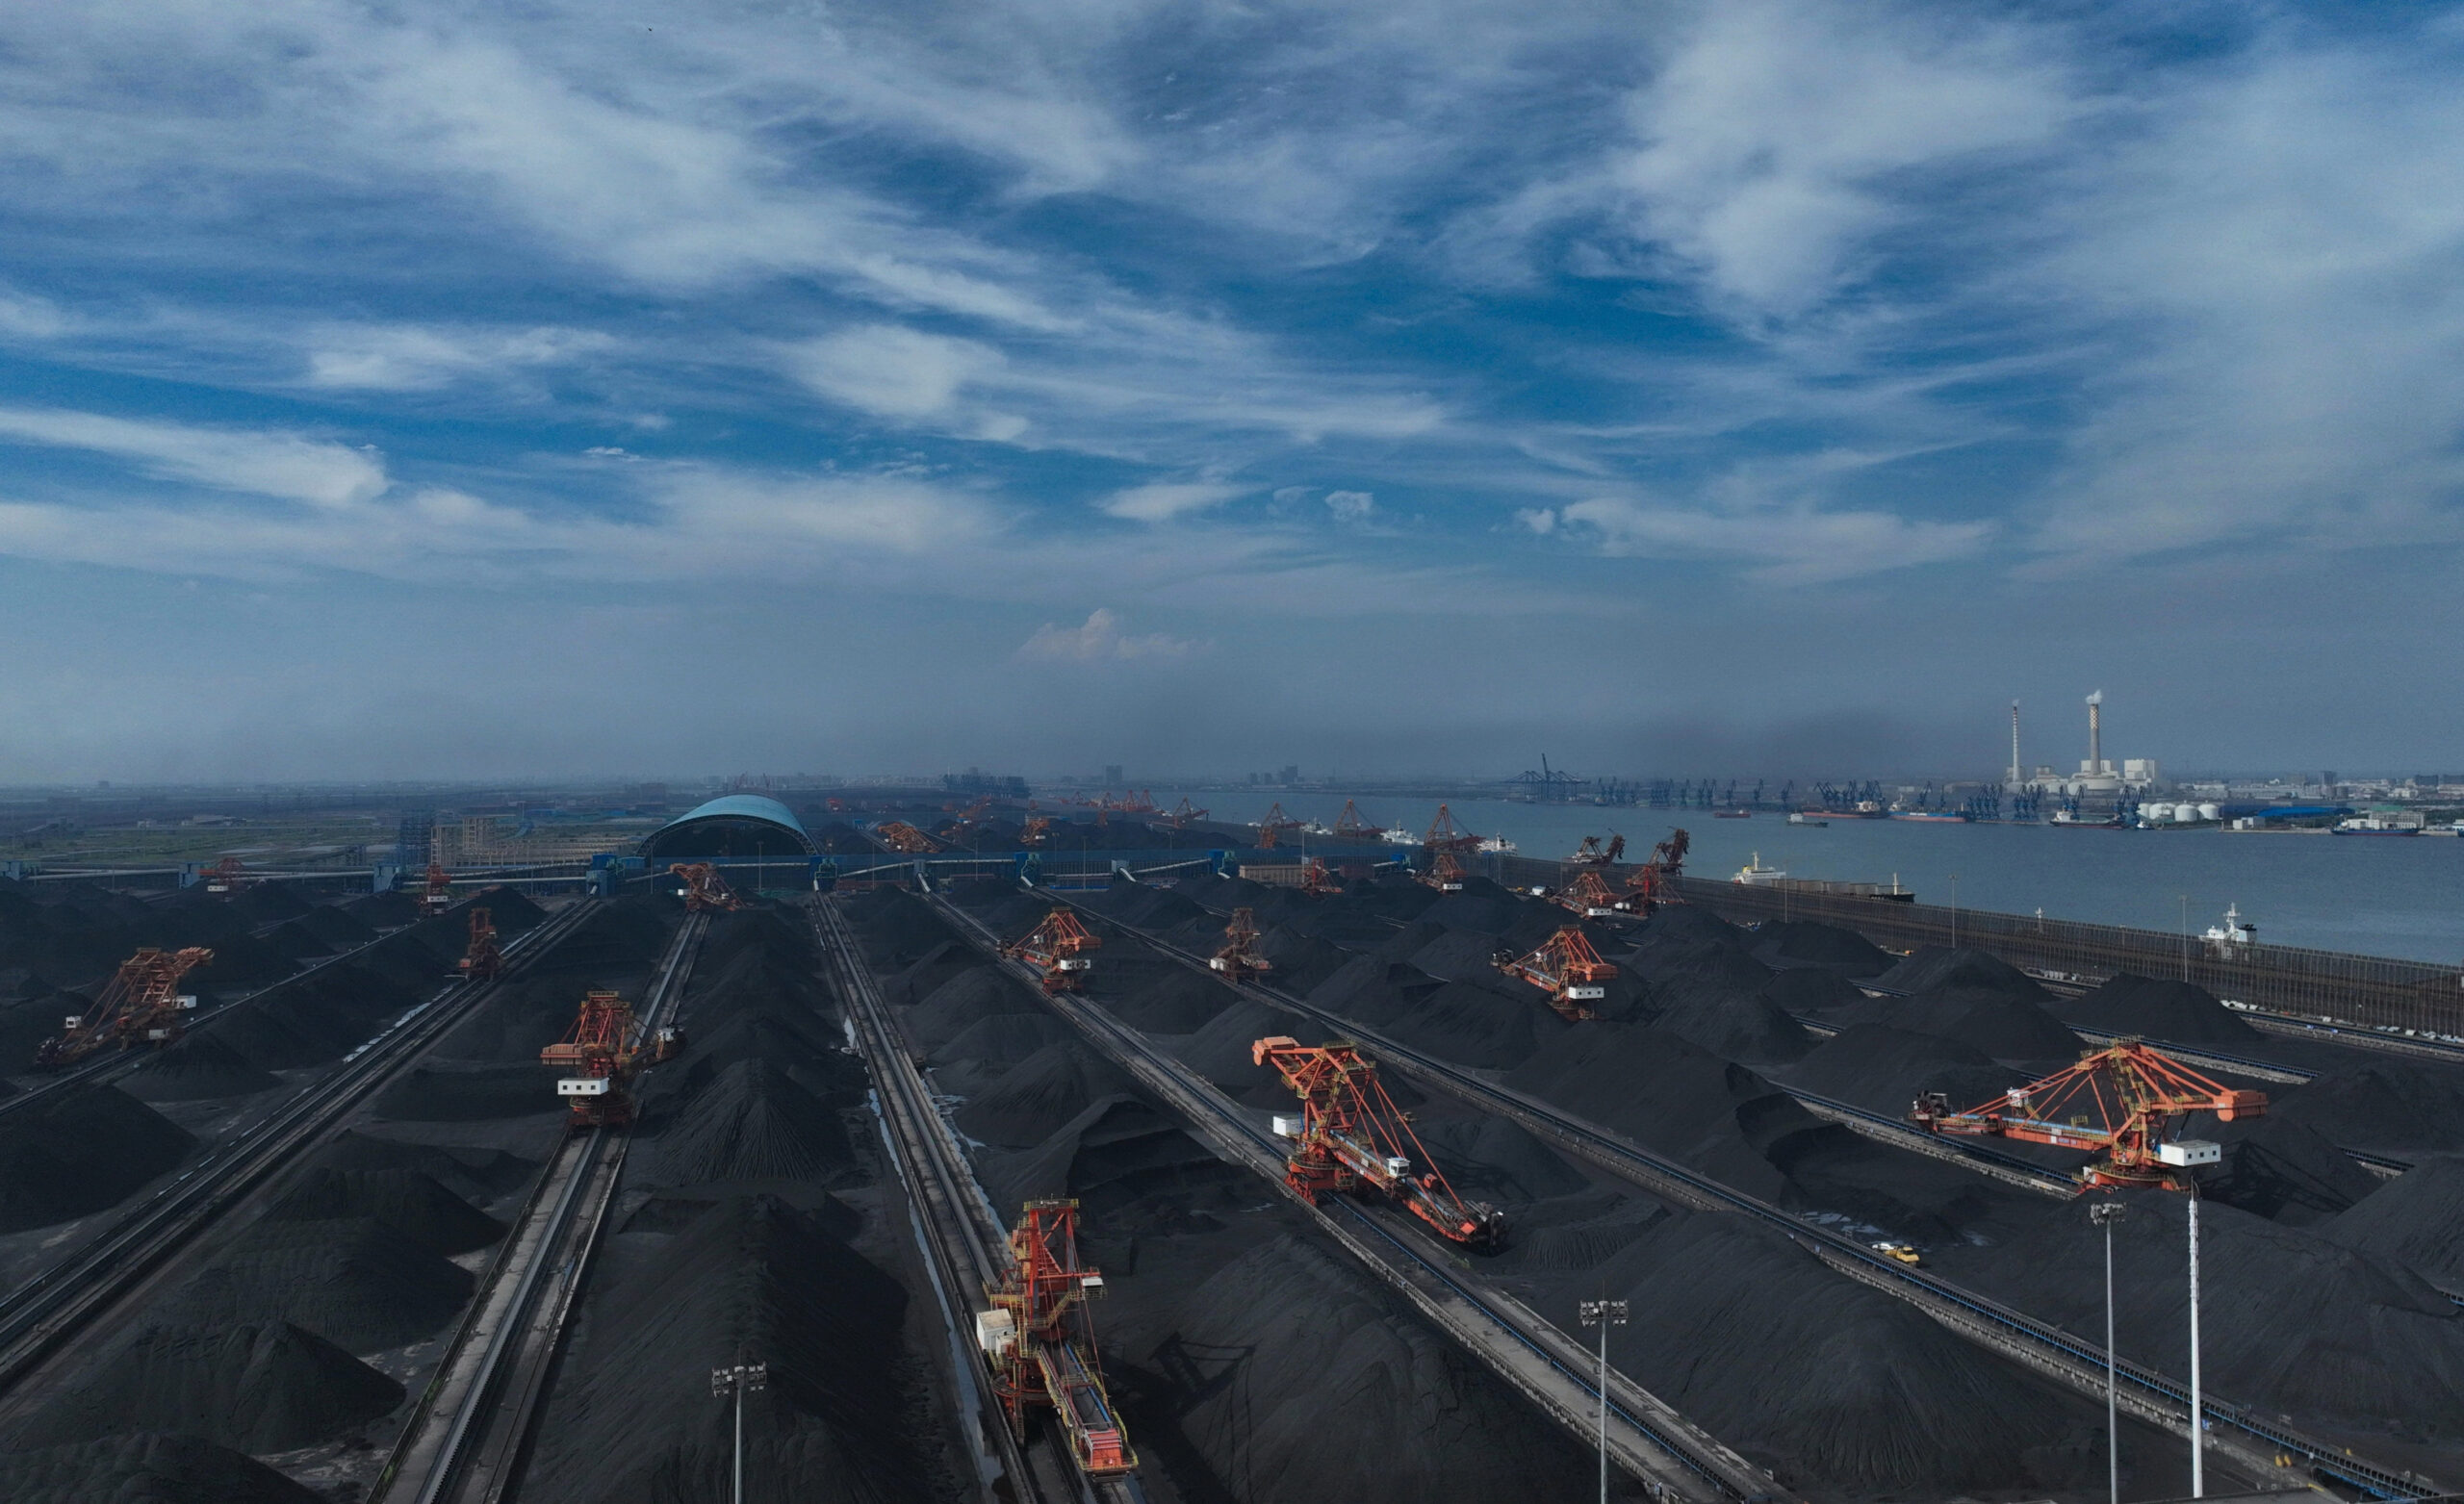 ผลผลิต 'ถ่านหิน' ของรัฐวิสาหกิจจีน ปี 2023 แตะ 1.13 พันล้านตัน